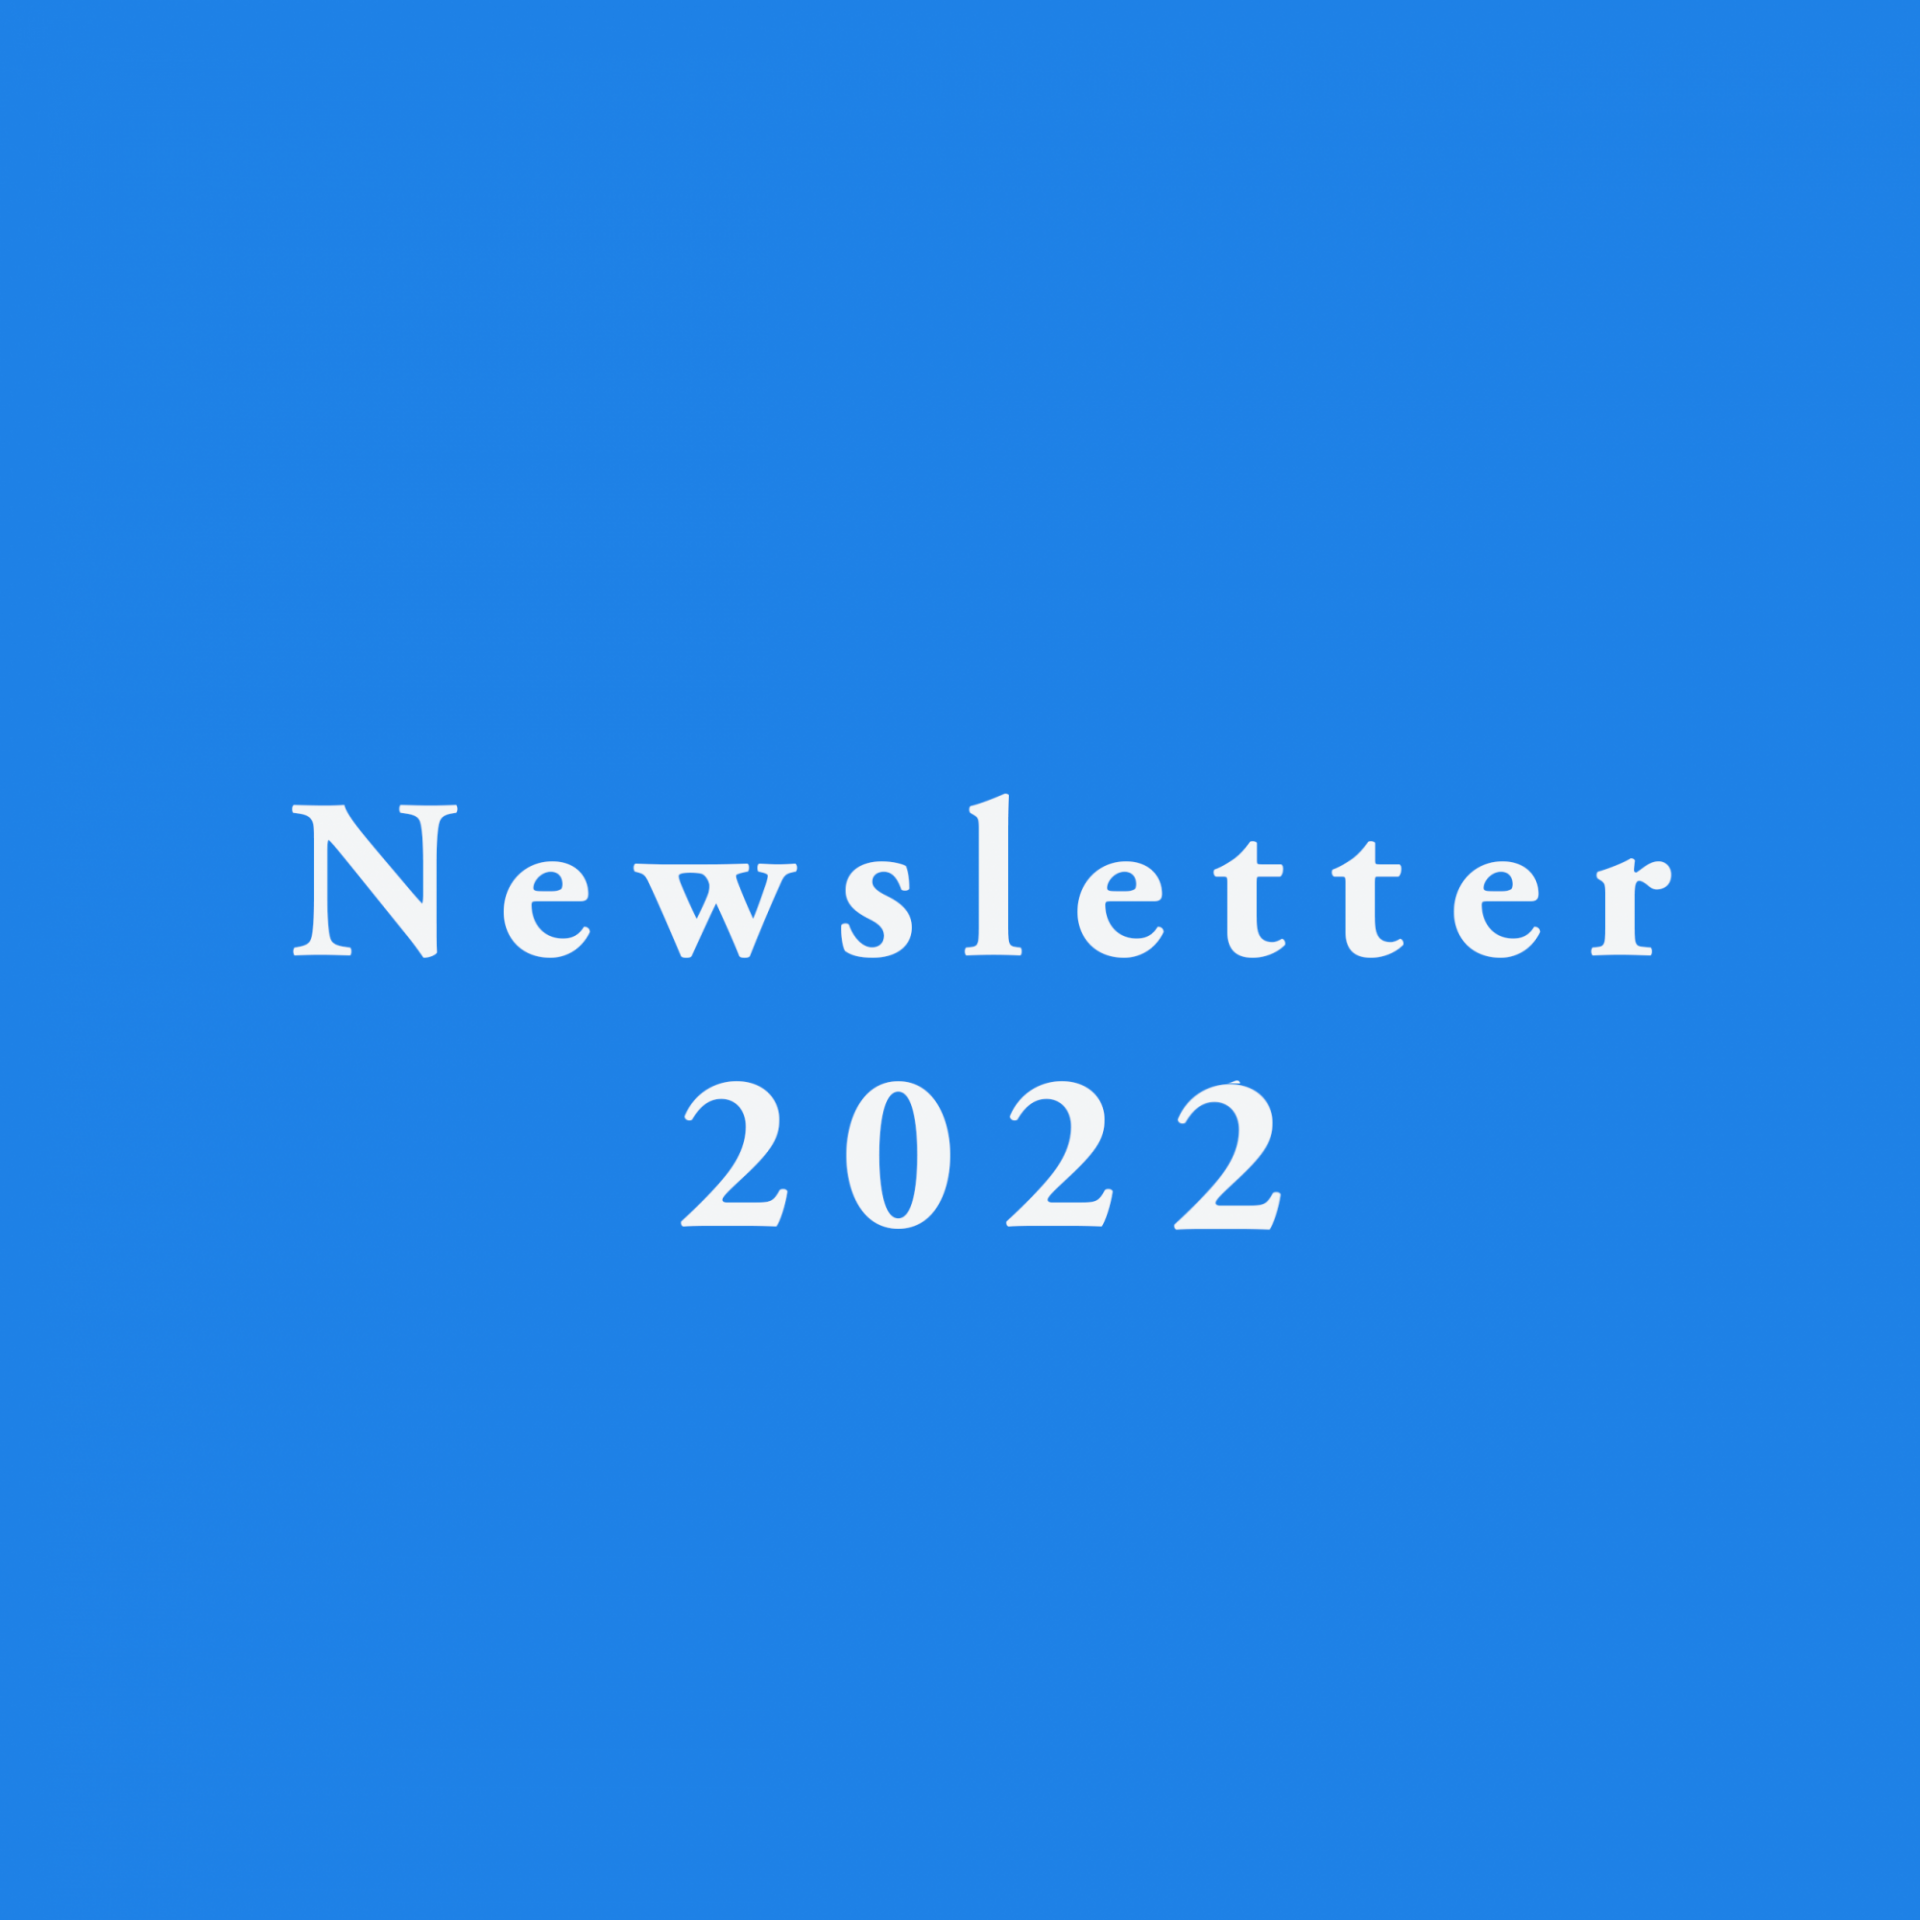 Newsletter 2022 - October